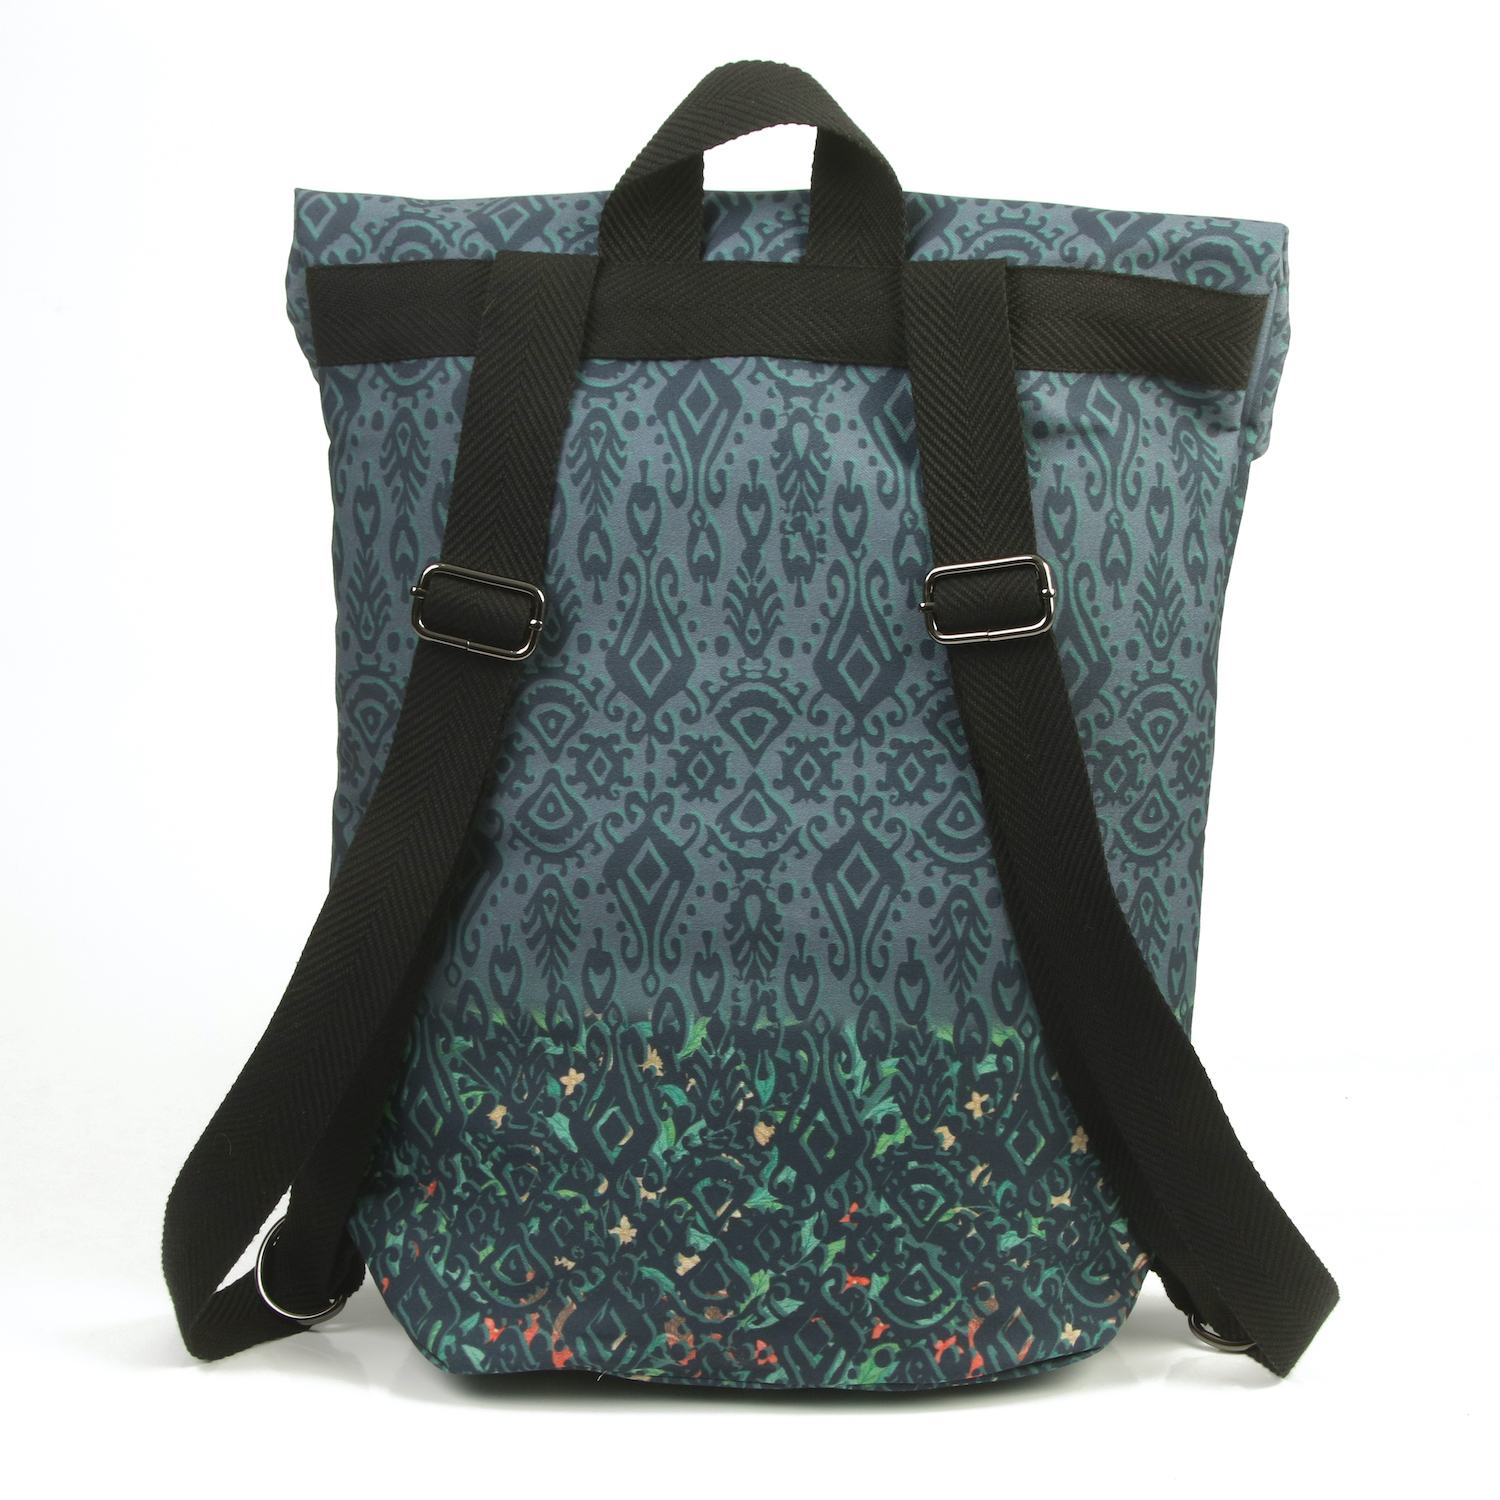 LazyDayz Designs Backpack γυναικείος σάκος πλάτης χειροποίητος bb0803c